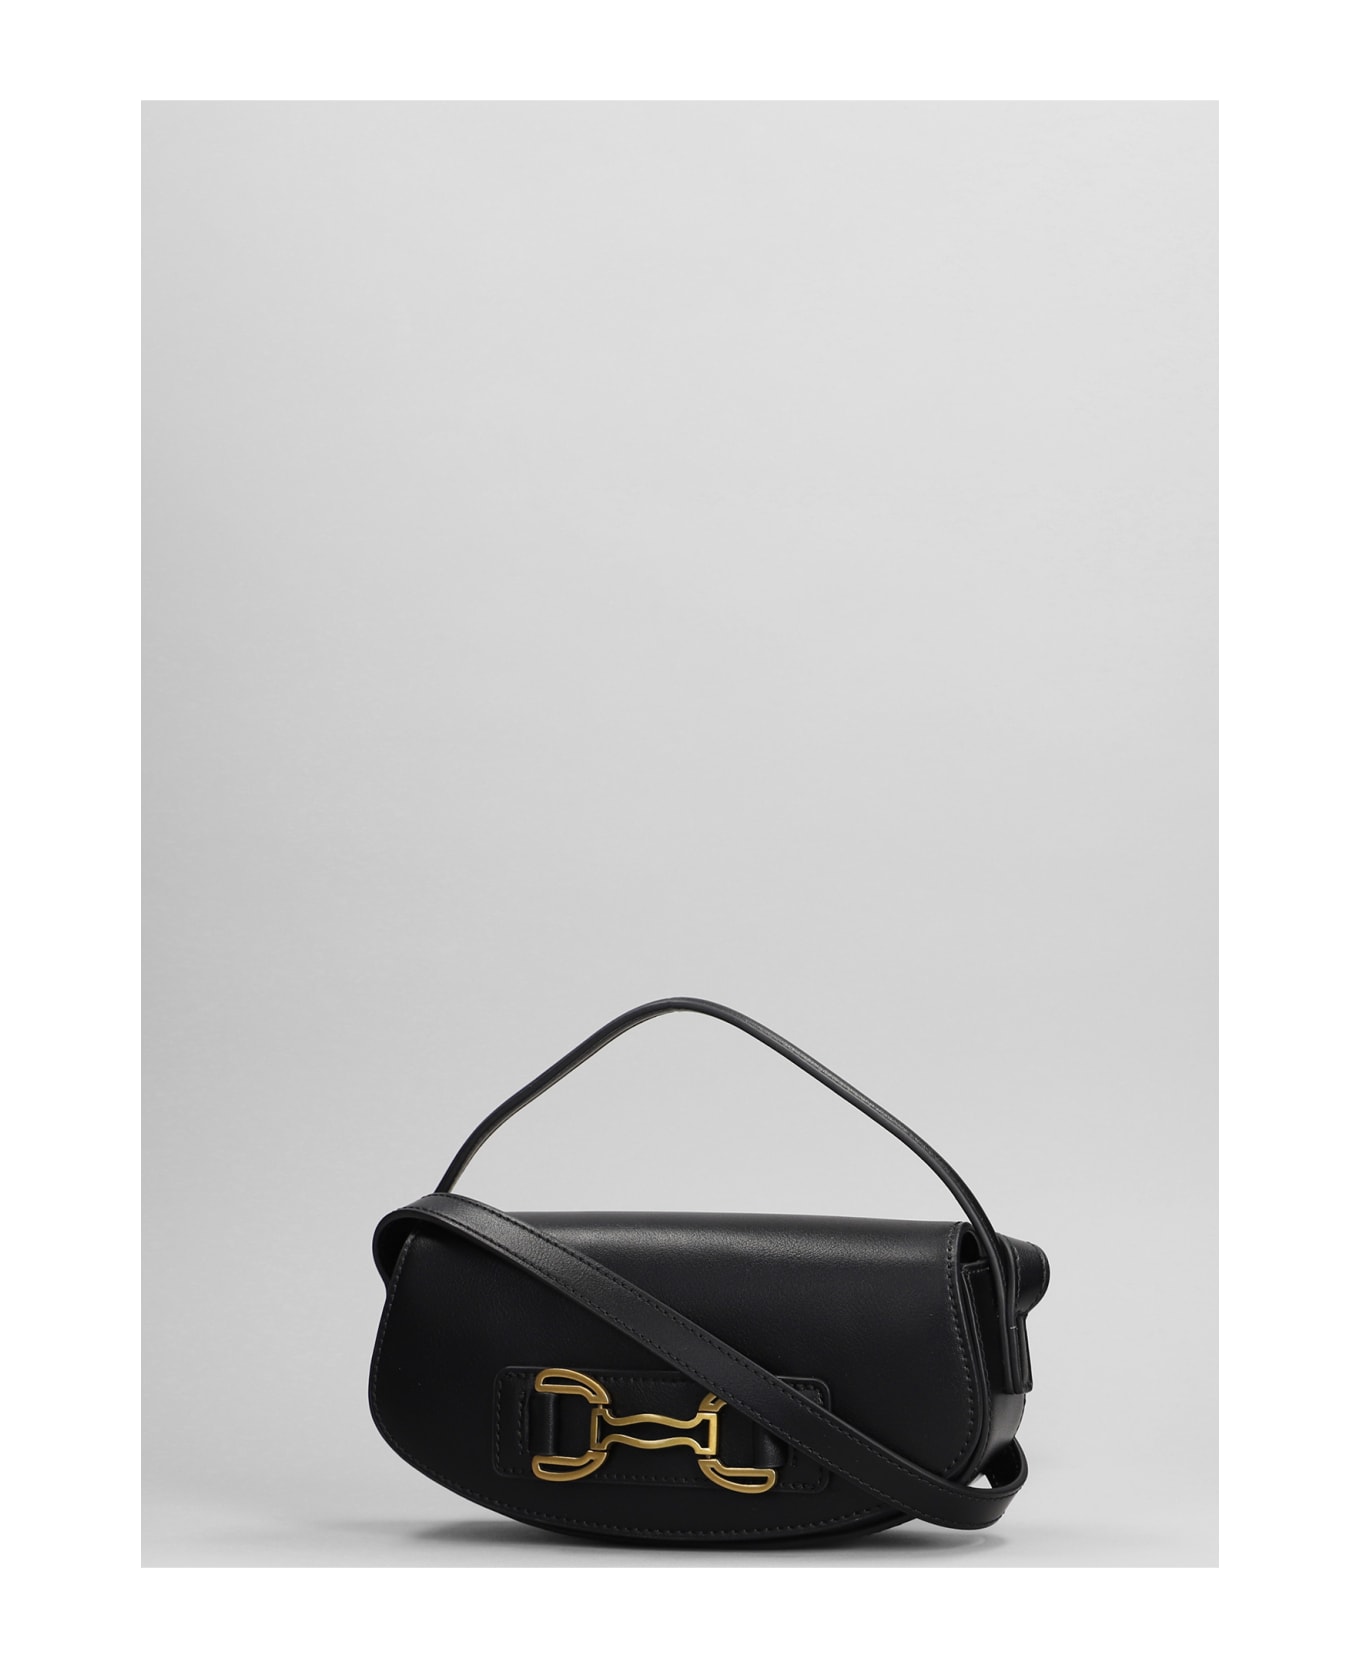 Bibi Lou Shoulder Bag In Black Leather - black